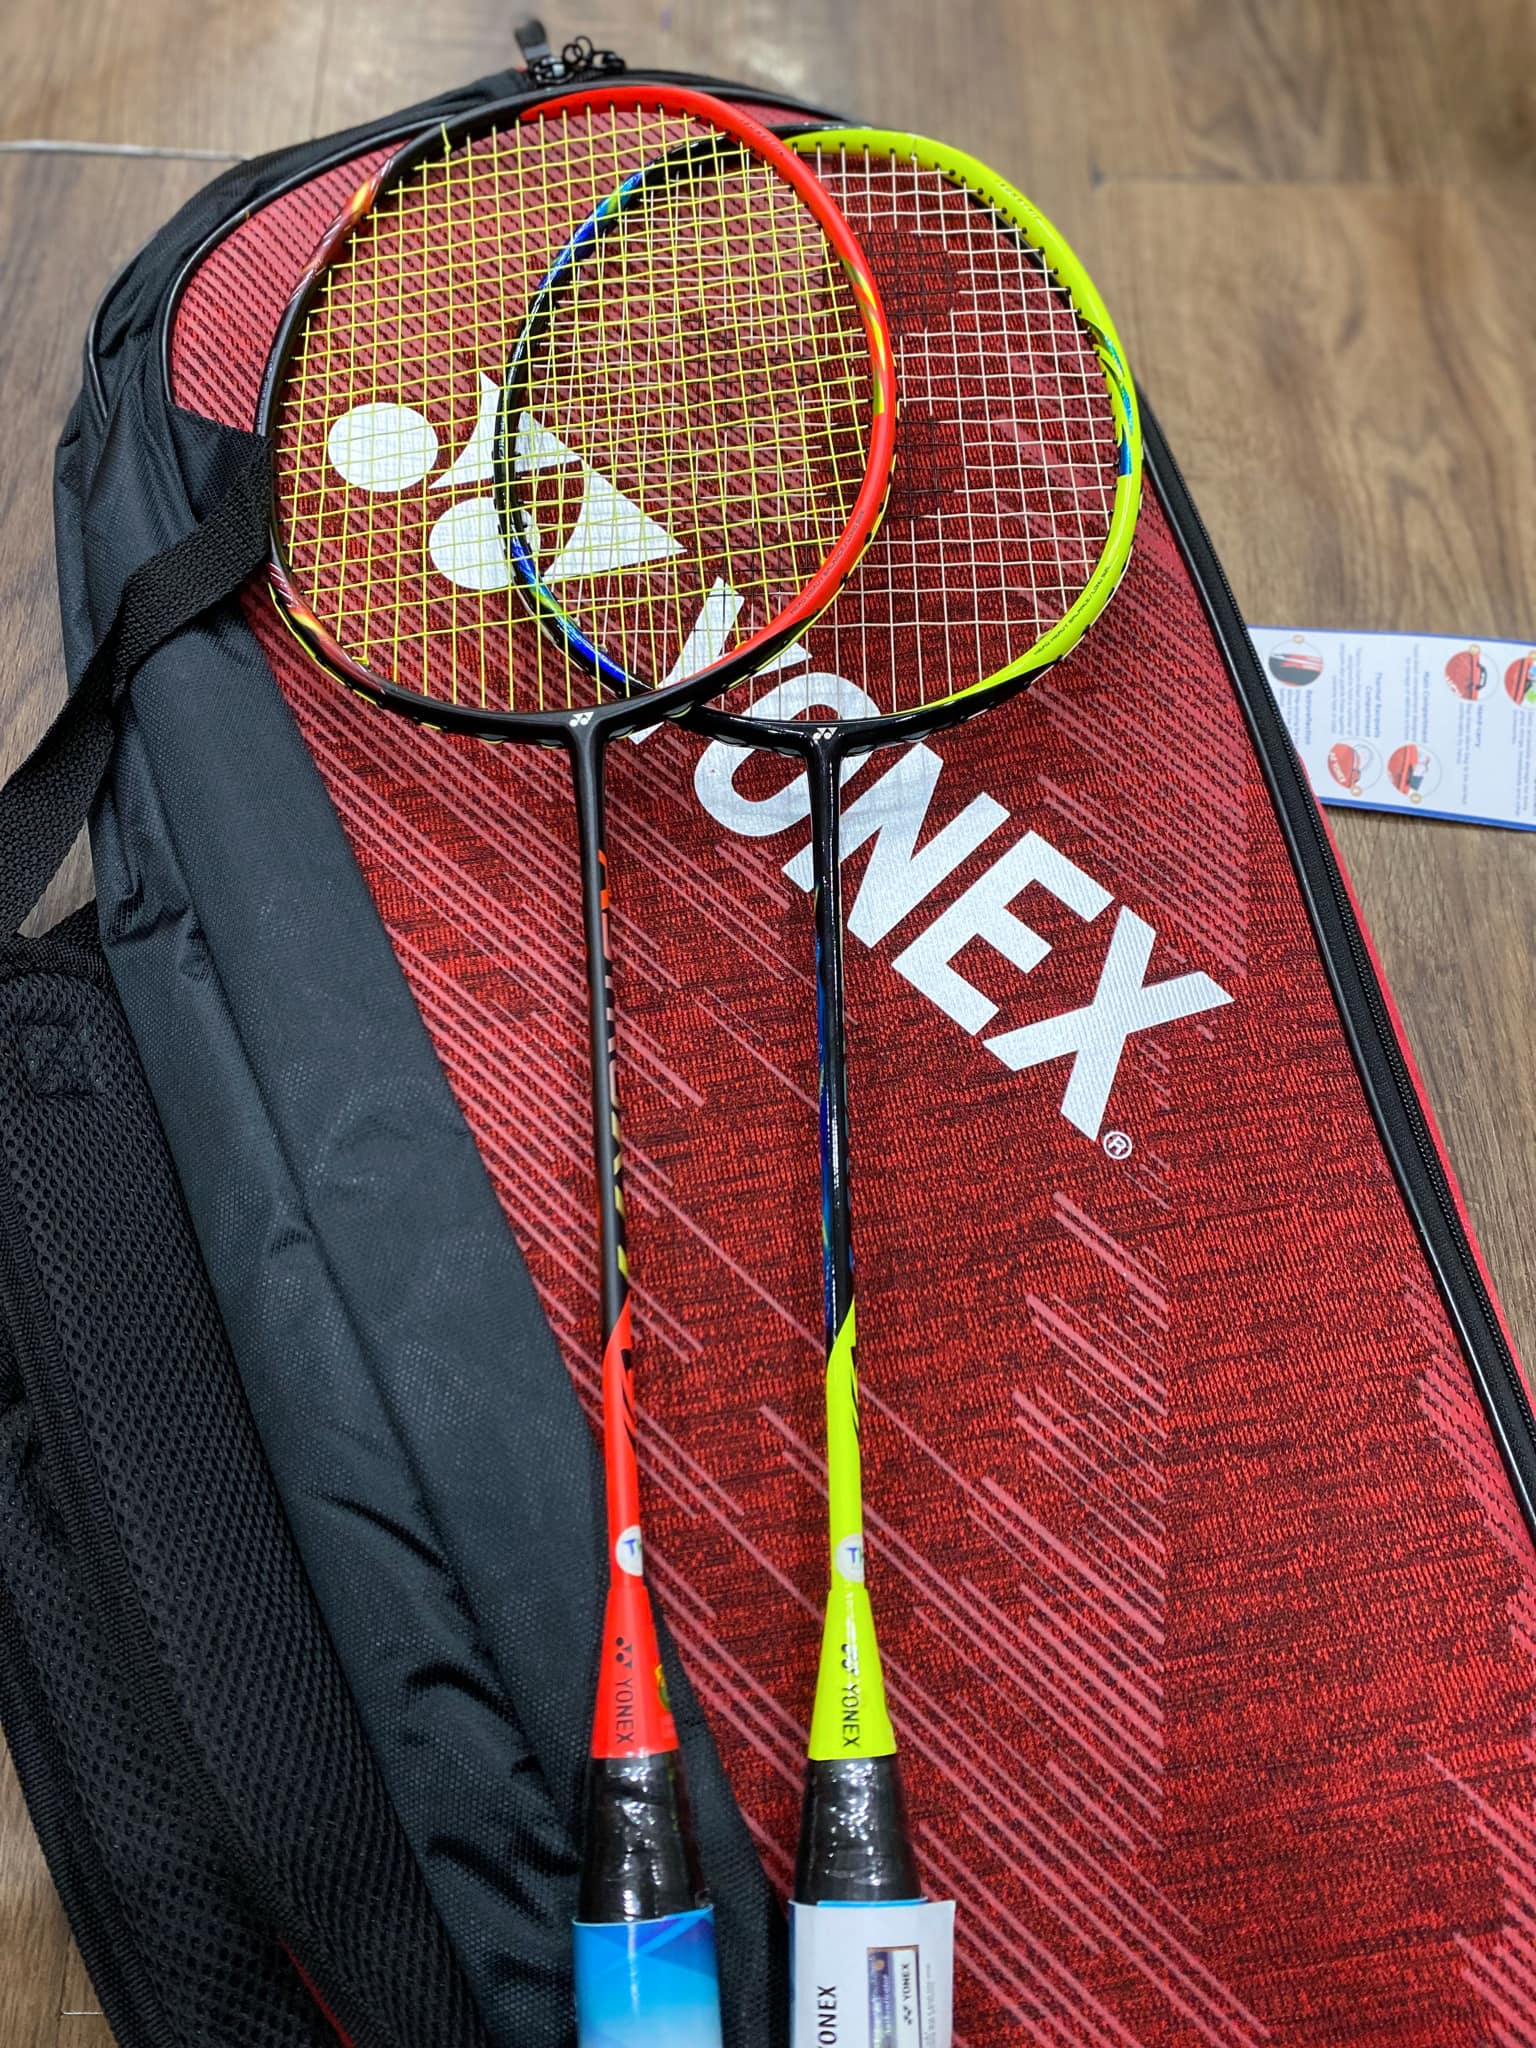 Kinh nghiệm mua vợt cầu lông cũ